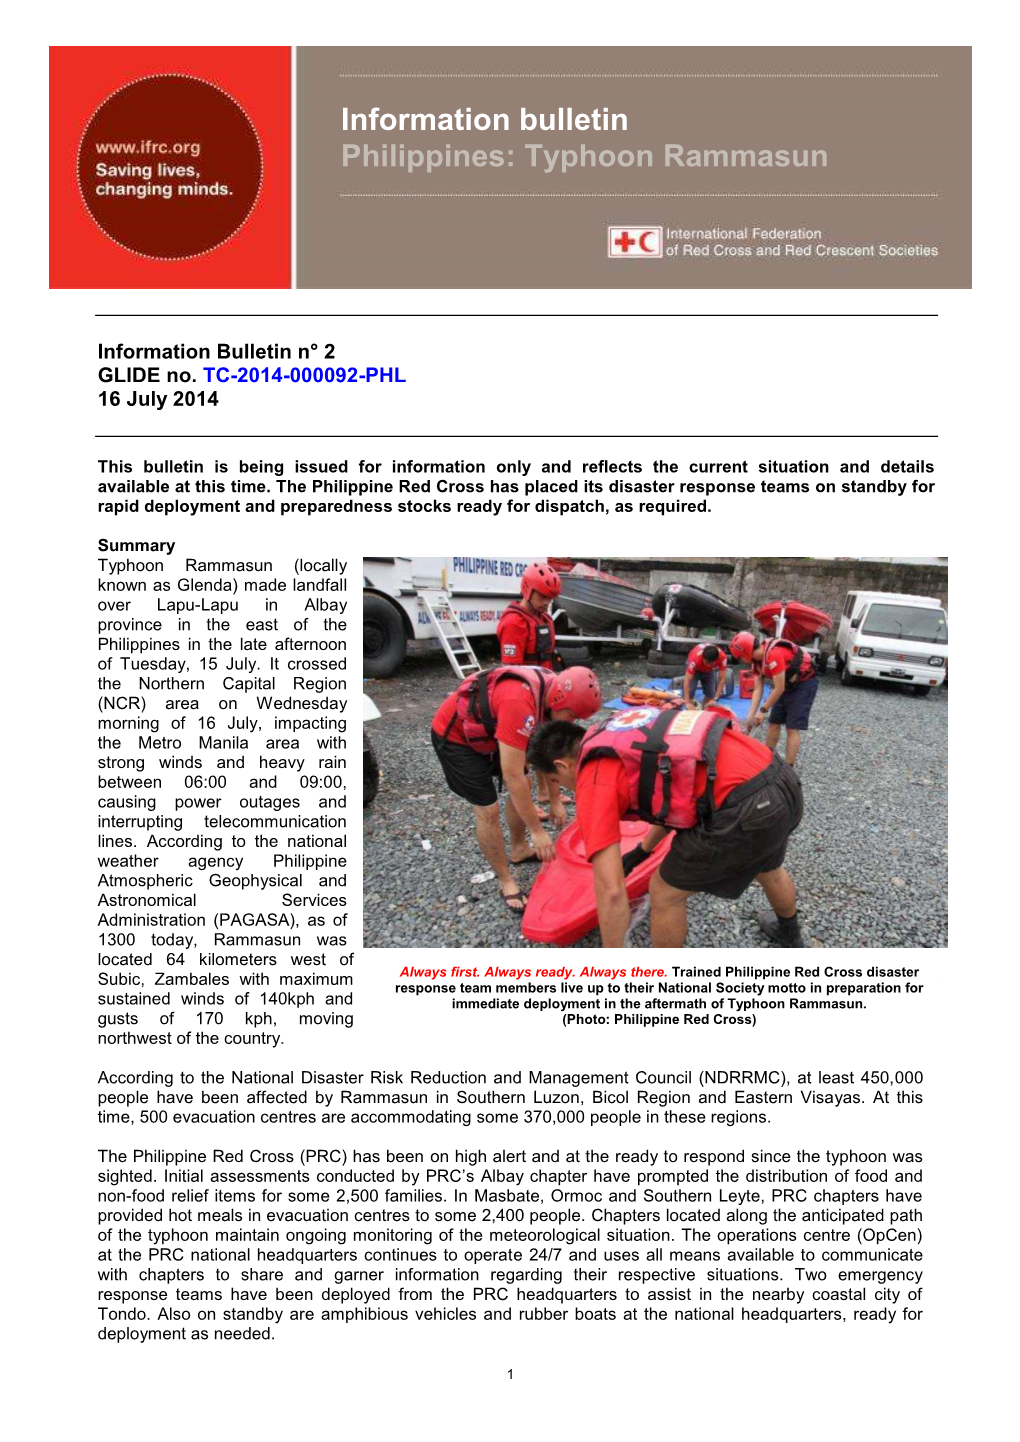 Information Bulletin Philippines: Typhoon Rammasun